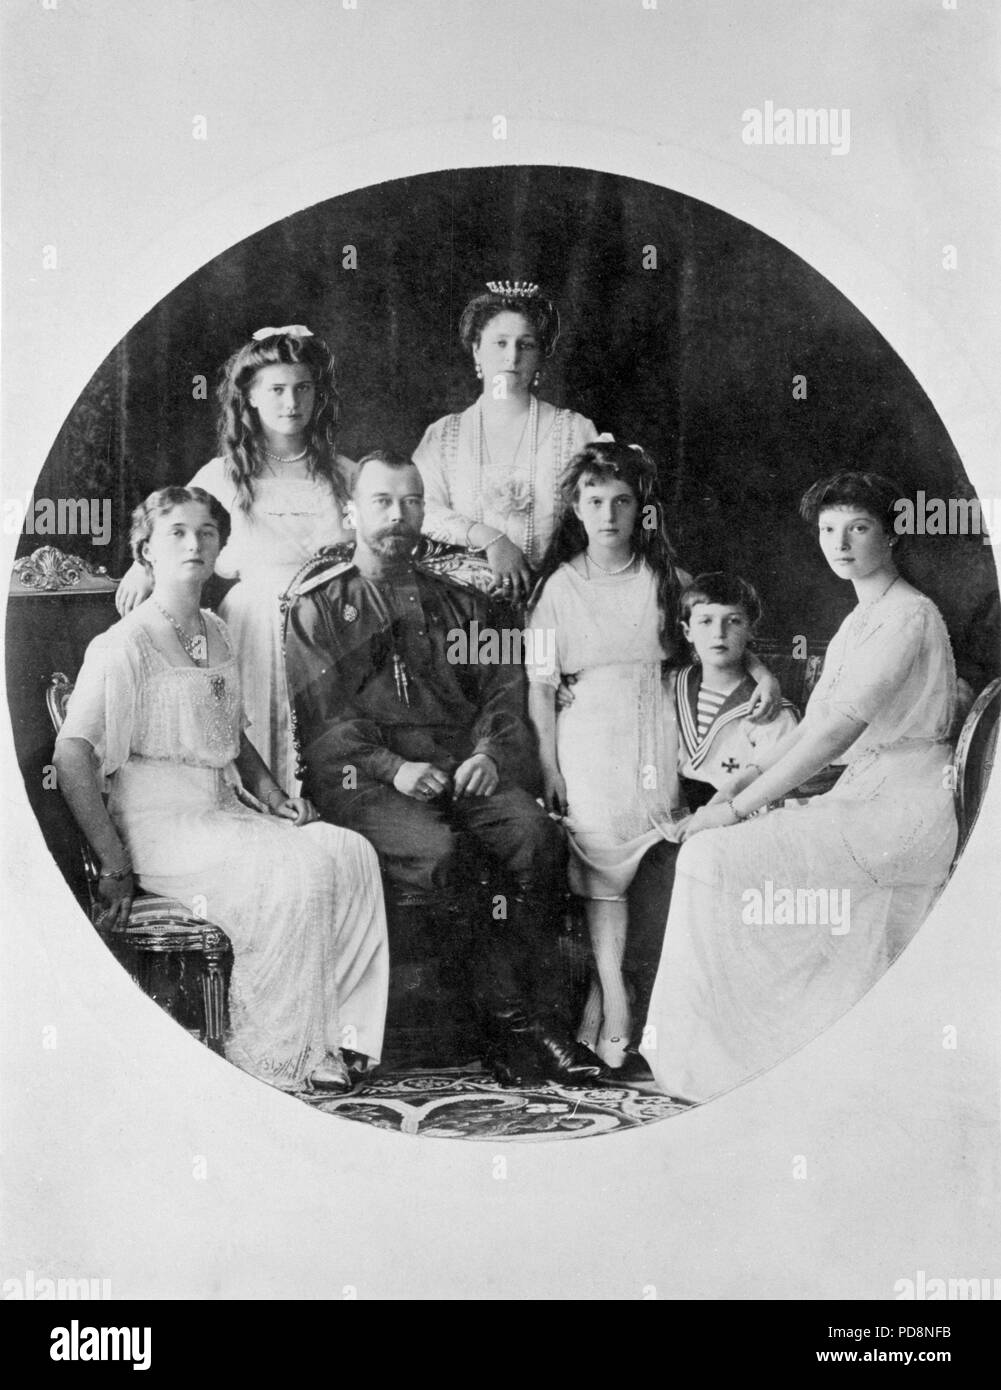 Le Tsar Nicolas II de Russie. 1868-1918. Le dernier empereur de Russie. L'on voit ici avec sa femme Alexandra et ses cinq enfants Tatiana, Anastasia, Alexei, Maria et Olga. Banque D'Images